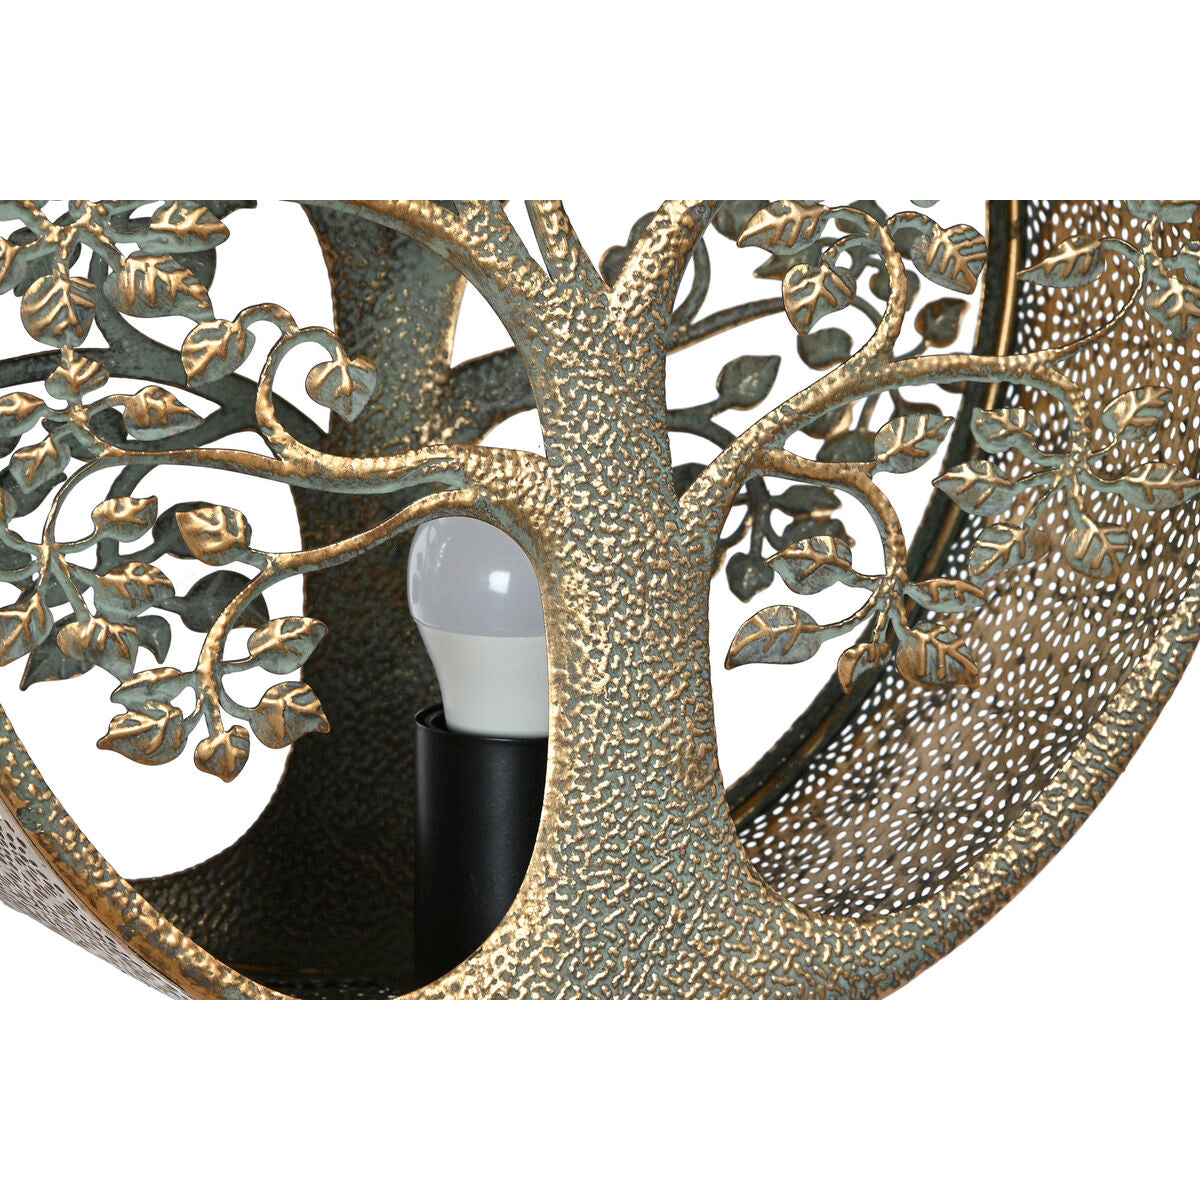 Stehlampe ESPRIT Baum jetzt kaufen – Pelepeon